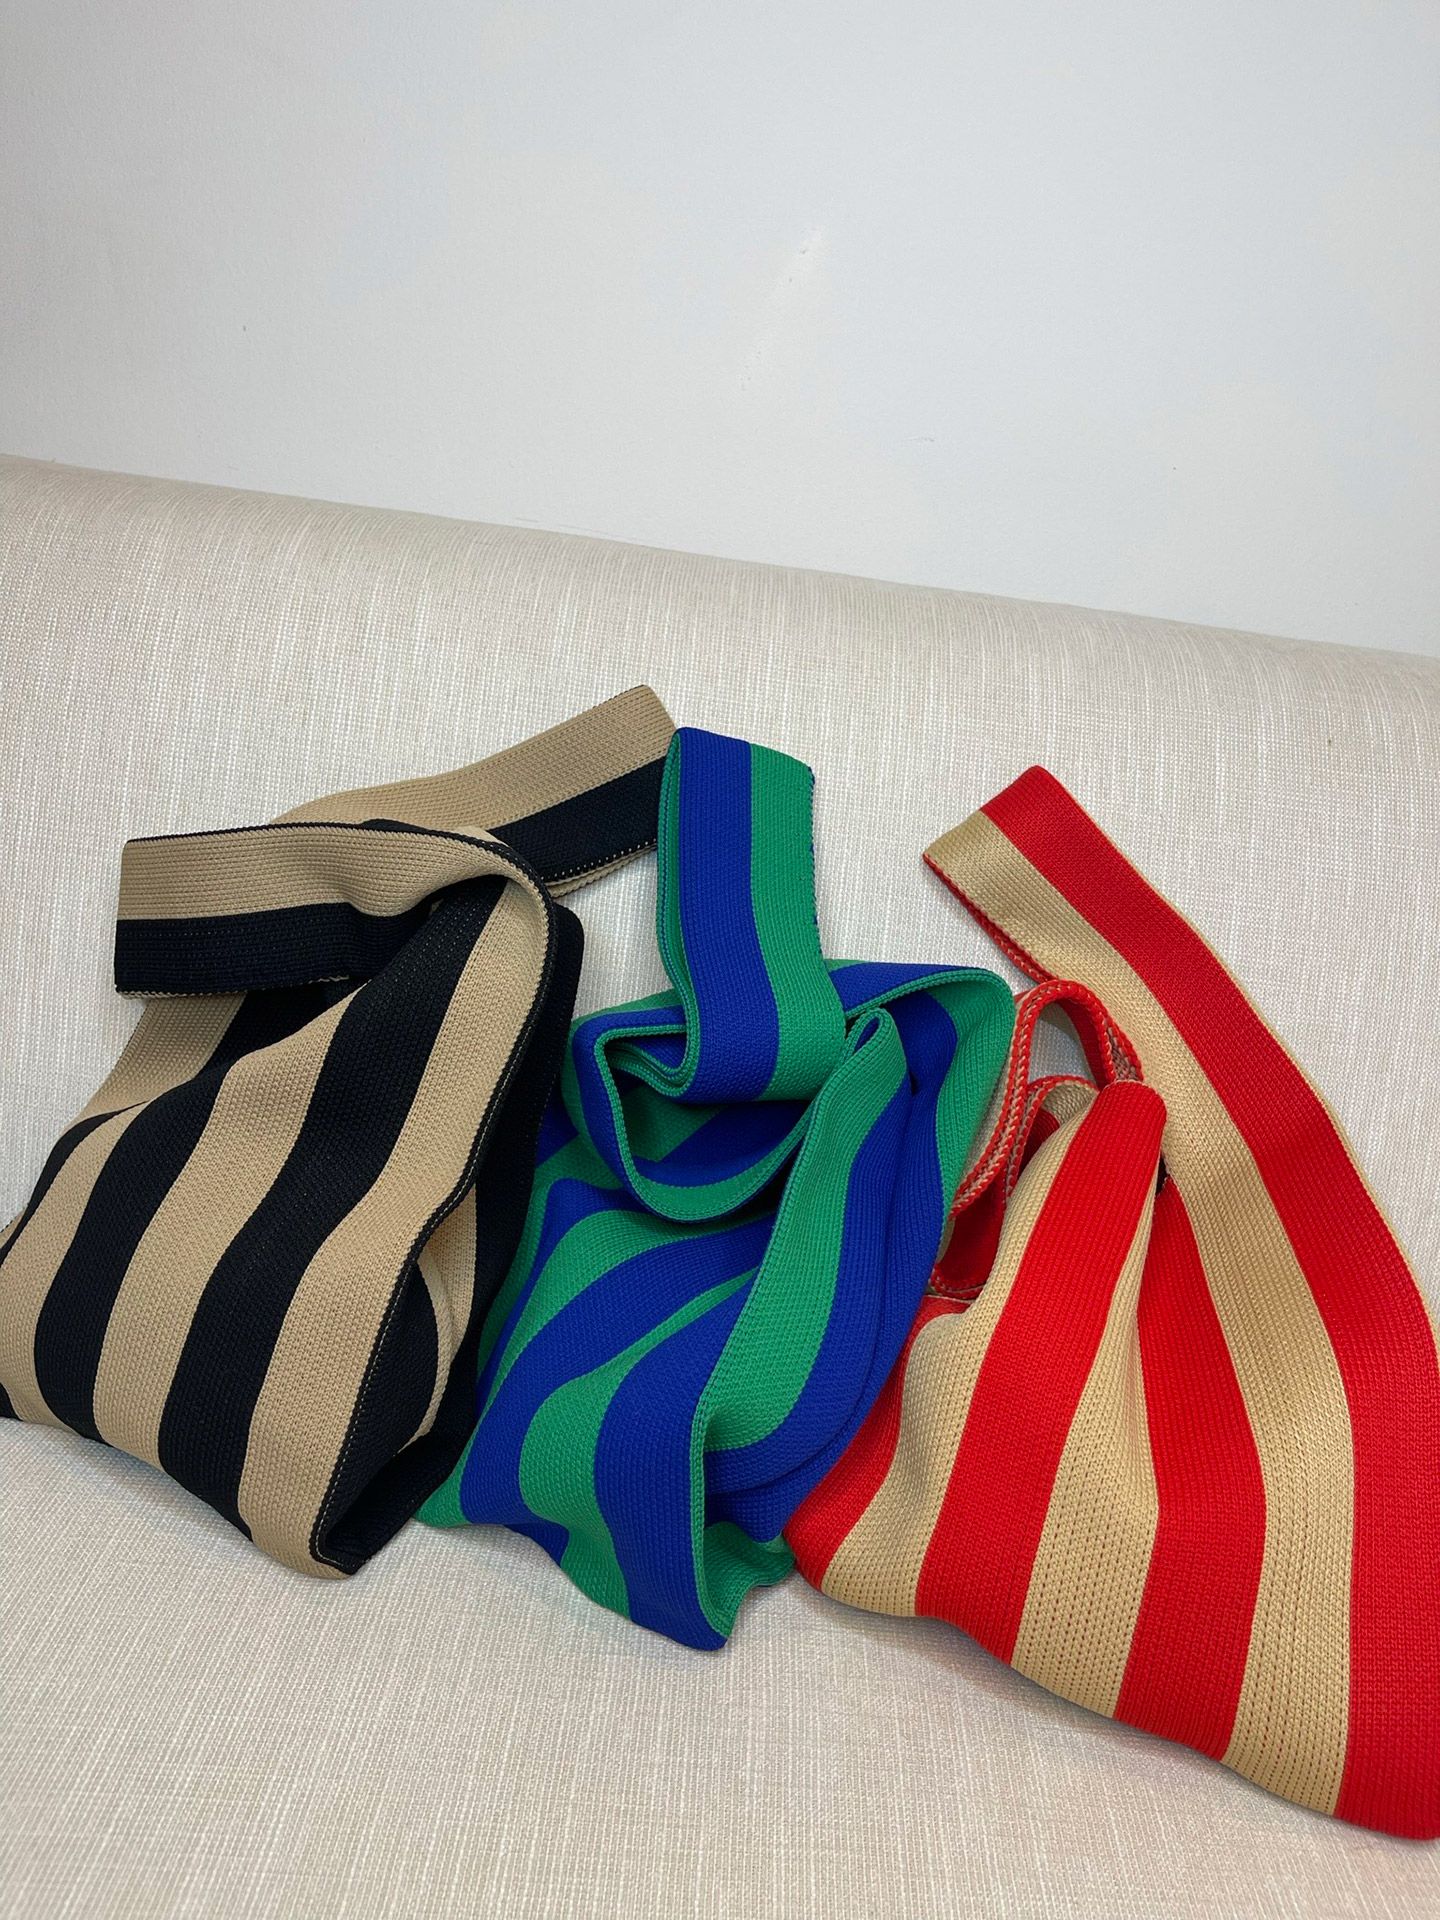 Nuestro Knit tote con un diseño a rayas, que le da un toque cool a tus outfits.
Es de un tejido suave y elástico.

Tela: Tejido
Alto 50cm (desde el asa)
Largo 24cm
Largo del asa 20cm
